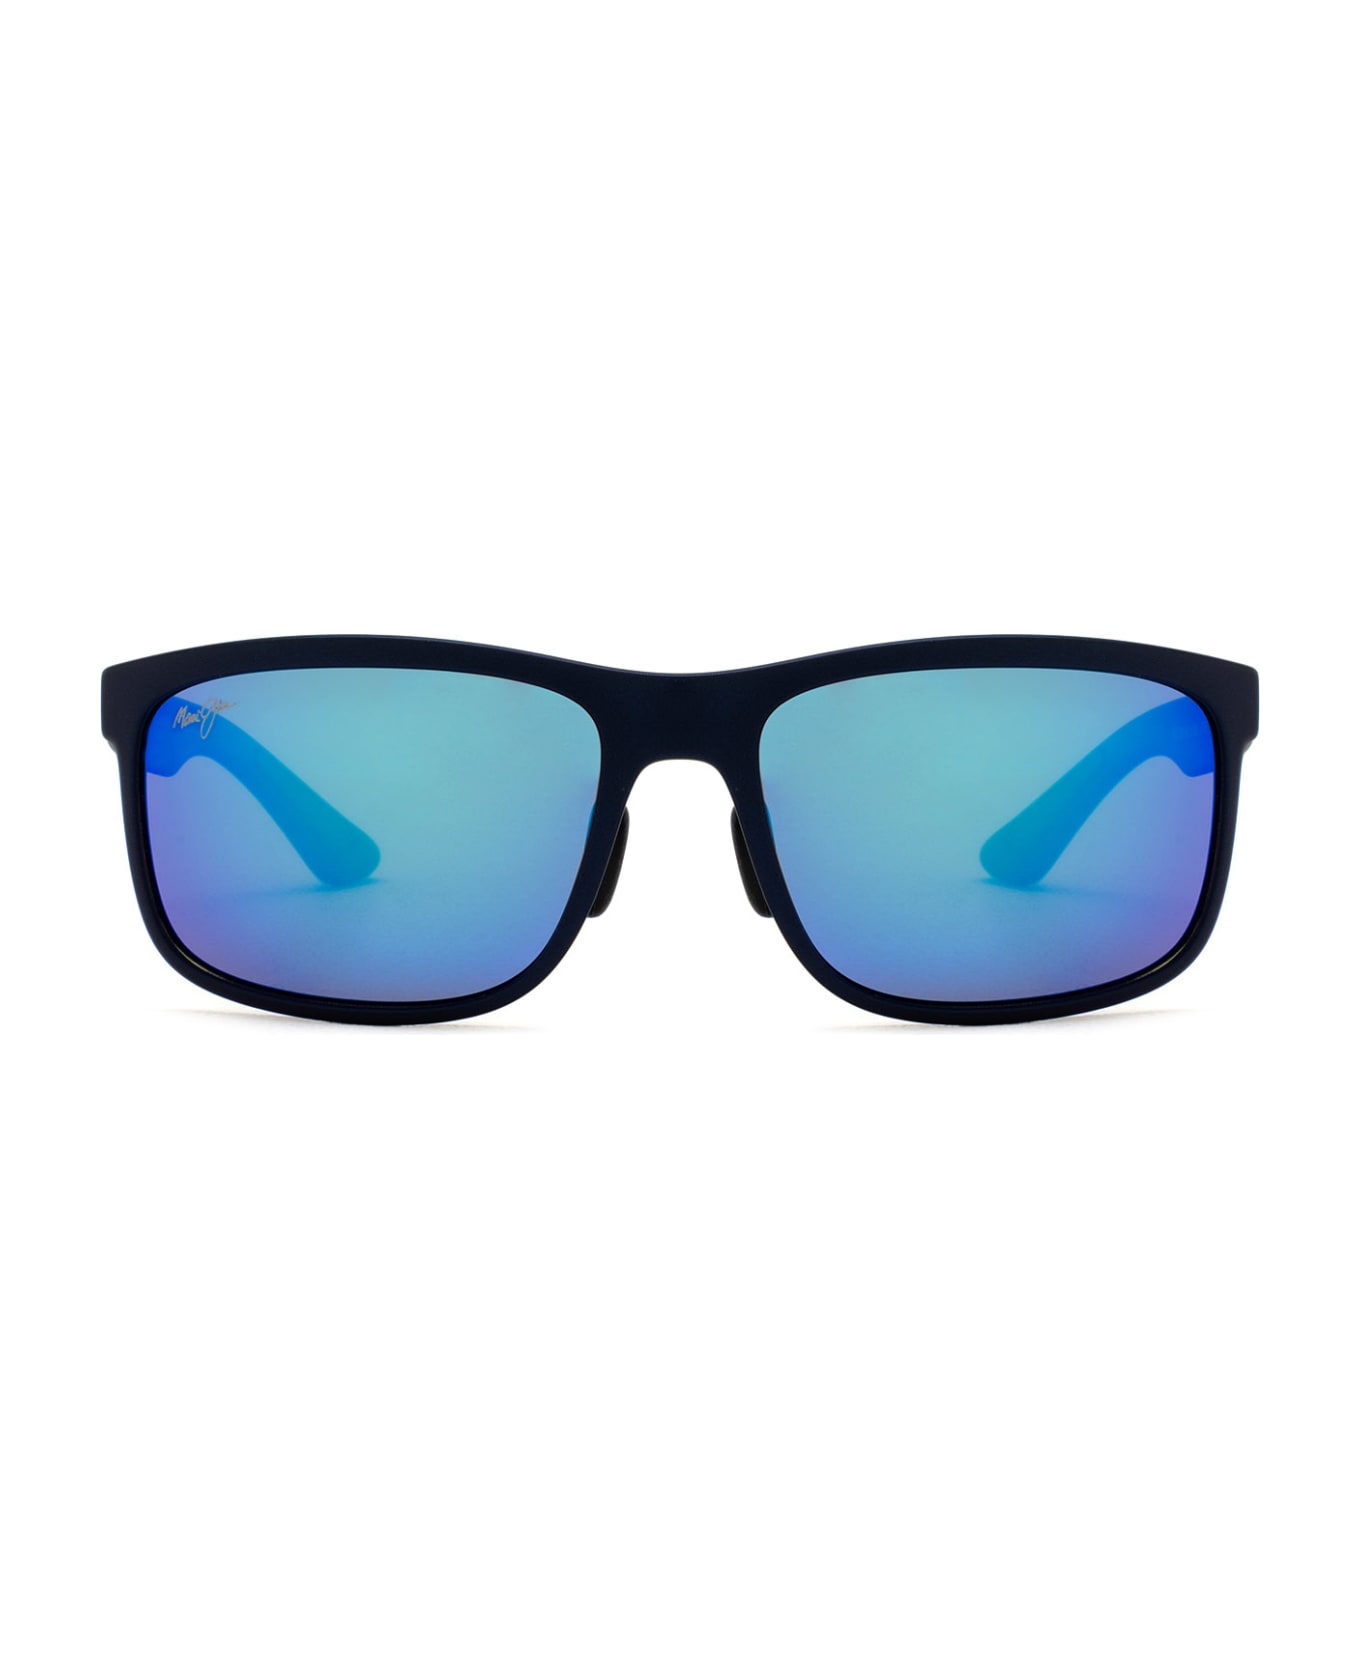 Maui Jim Mj449 Blue Sunglasses - Blue